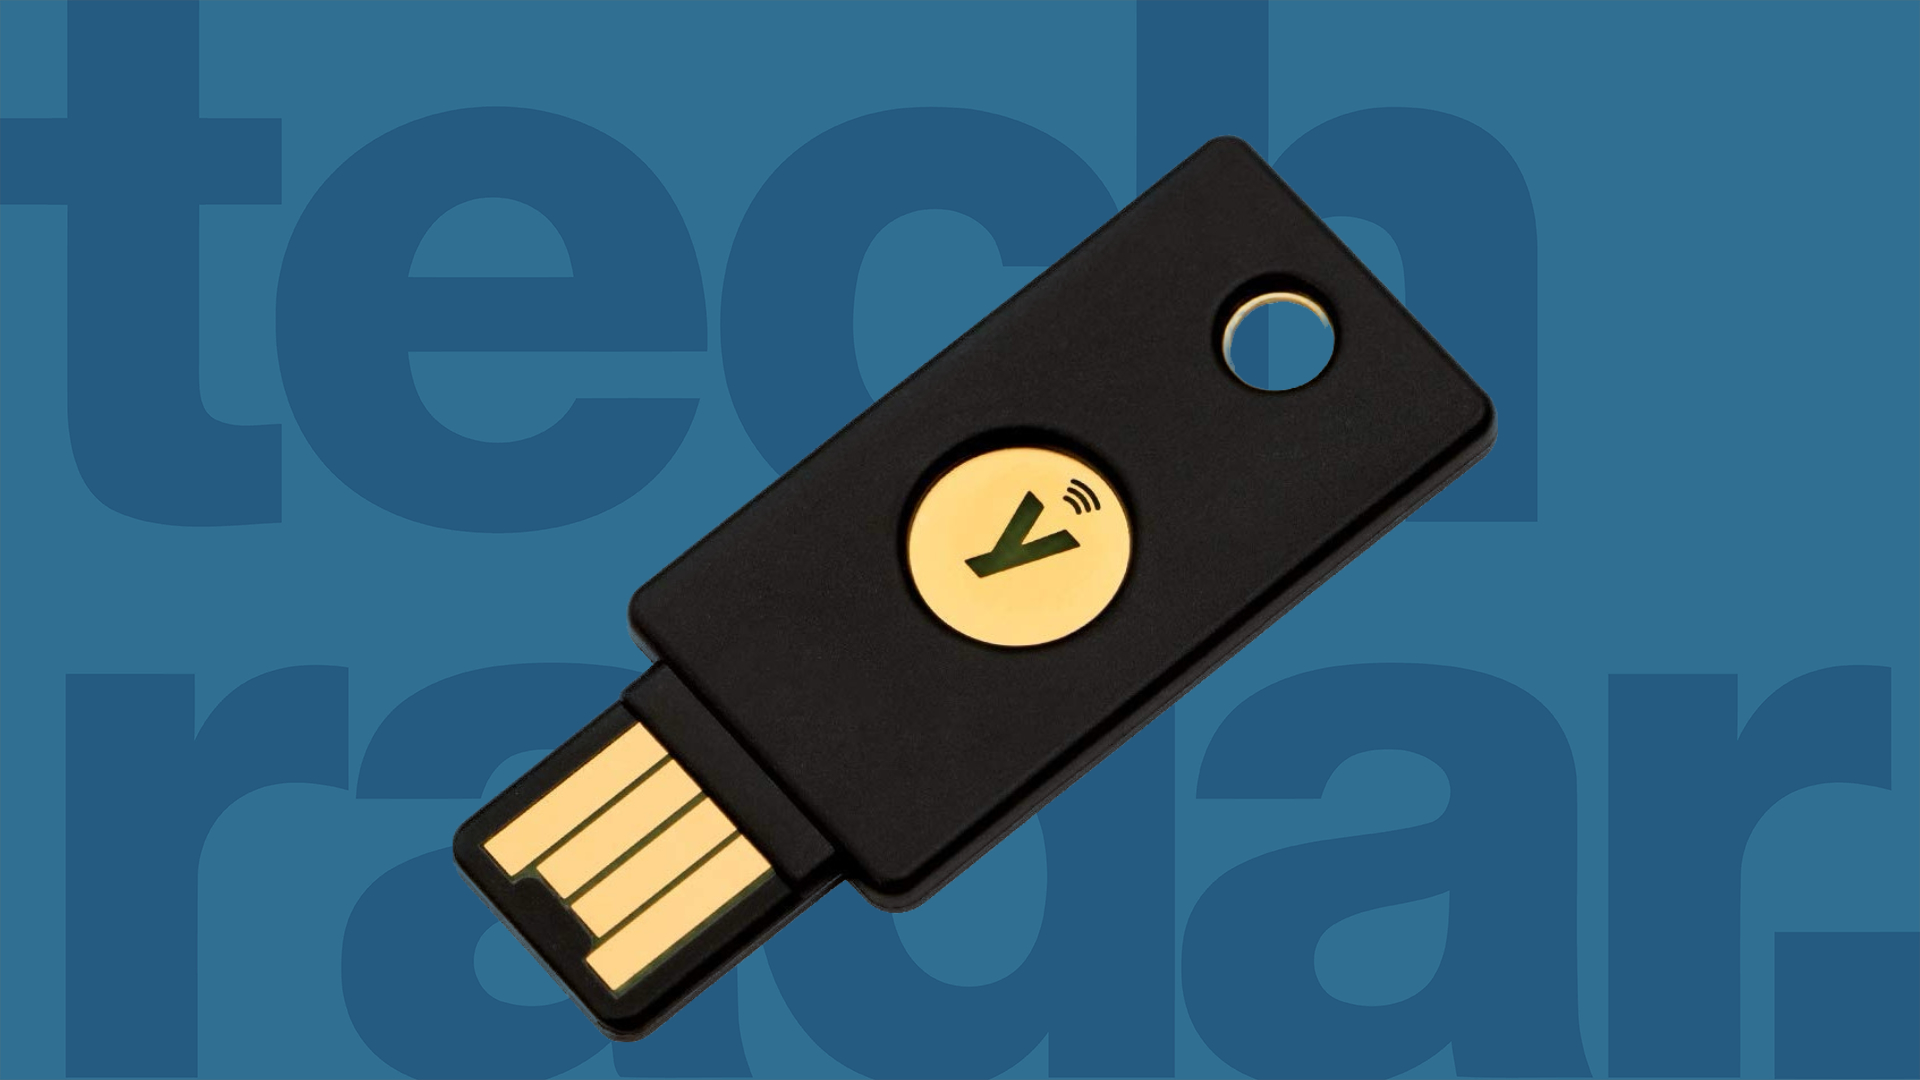 Yubico YubiKey 5C NFC - USB-säkerhetsnyckel - NFC